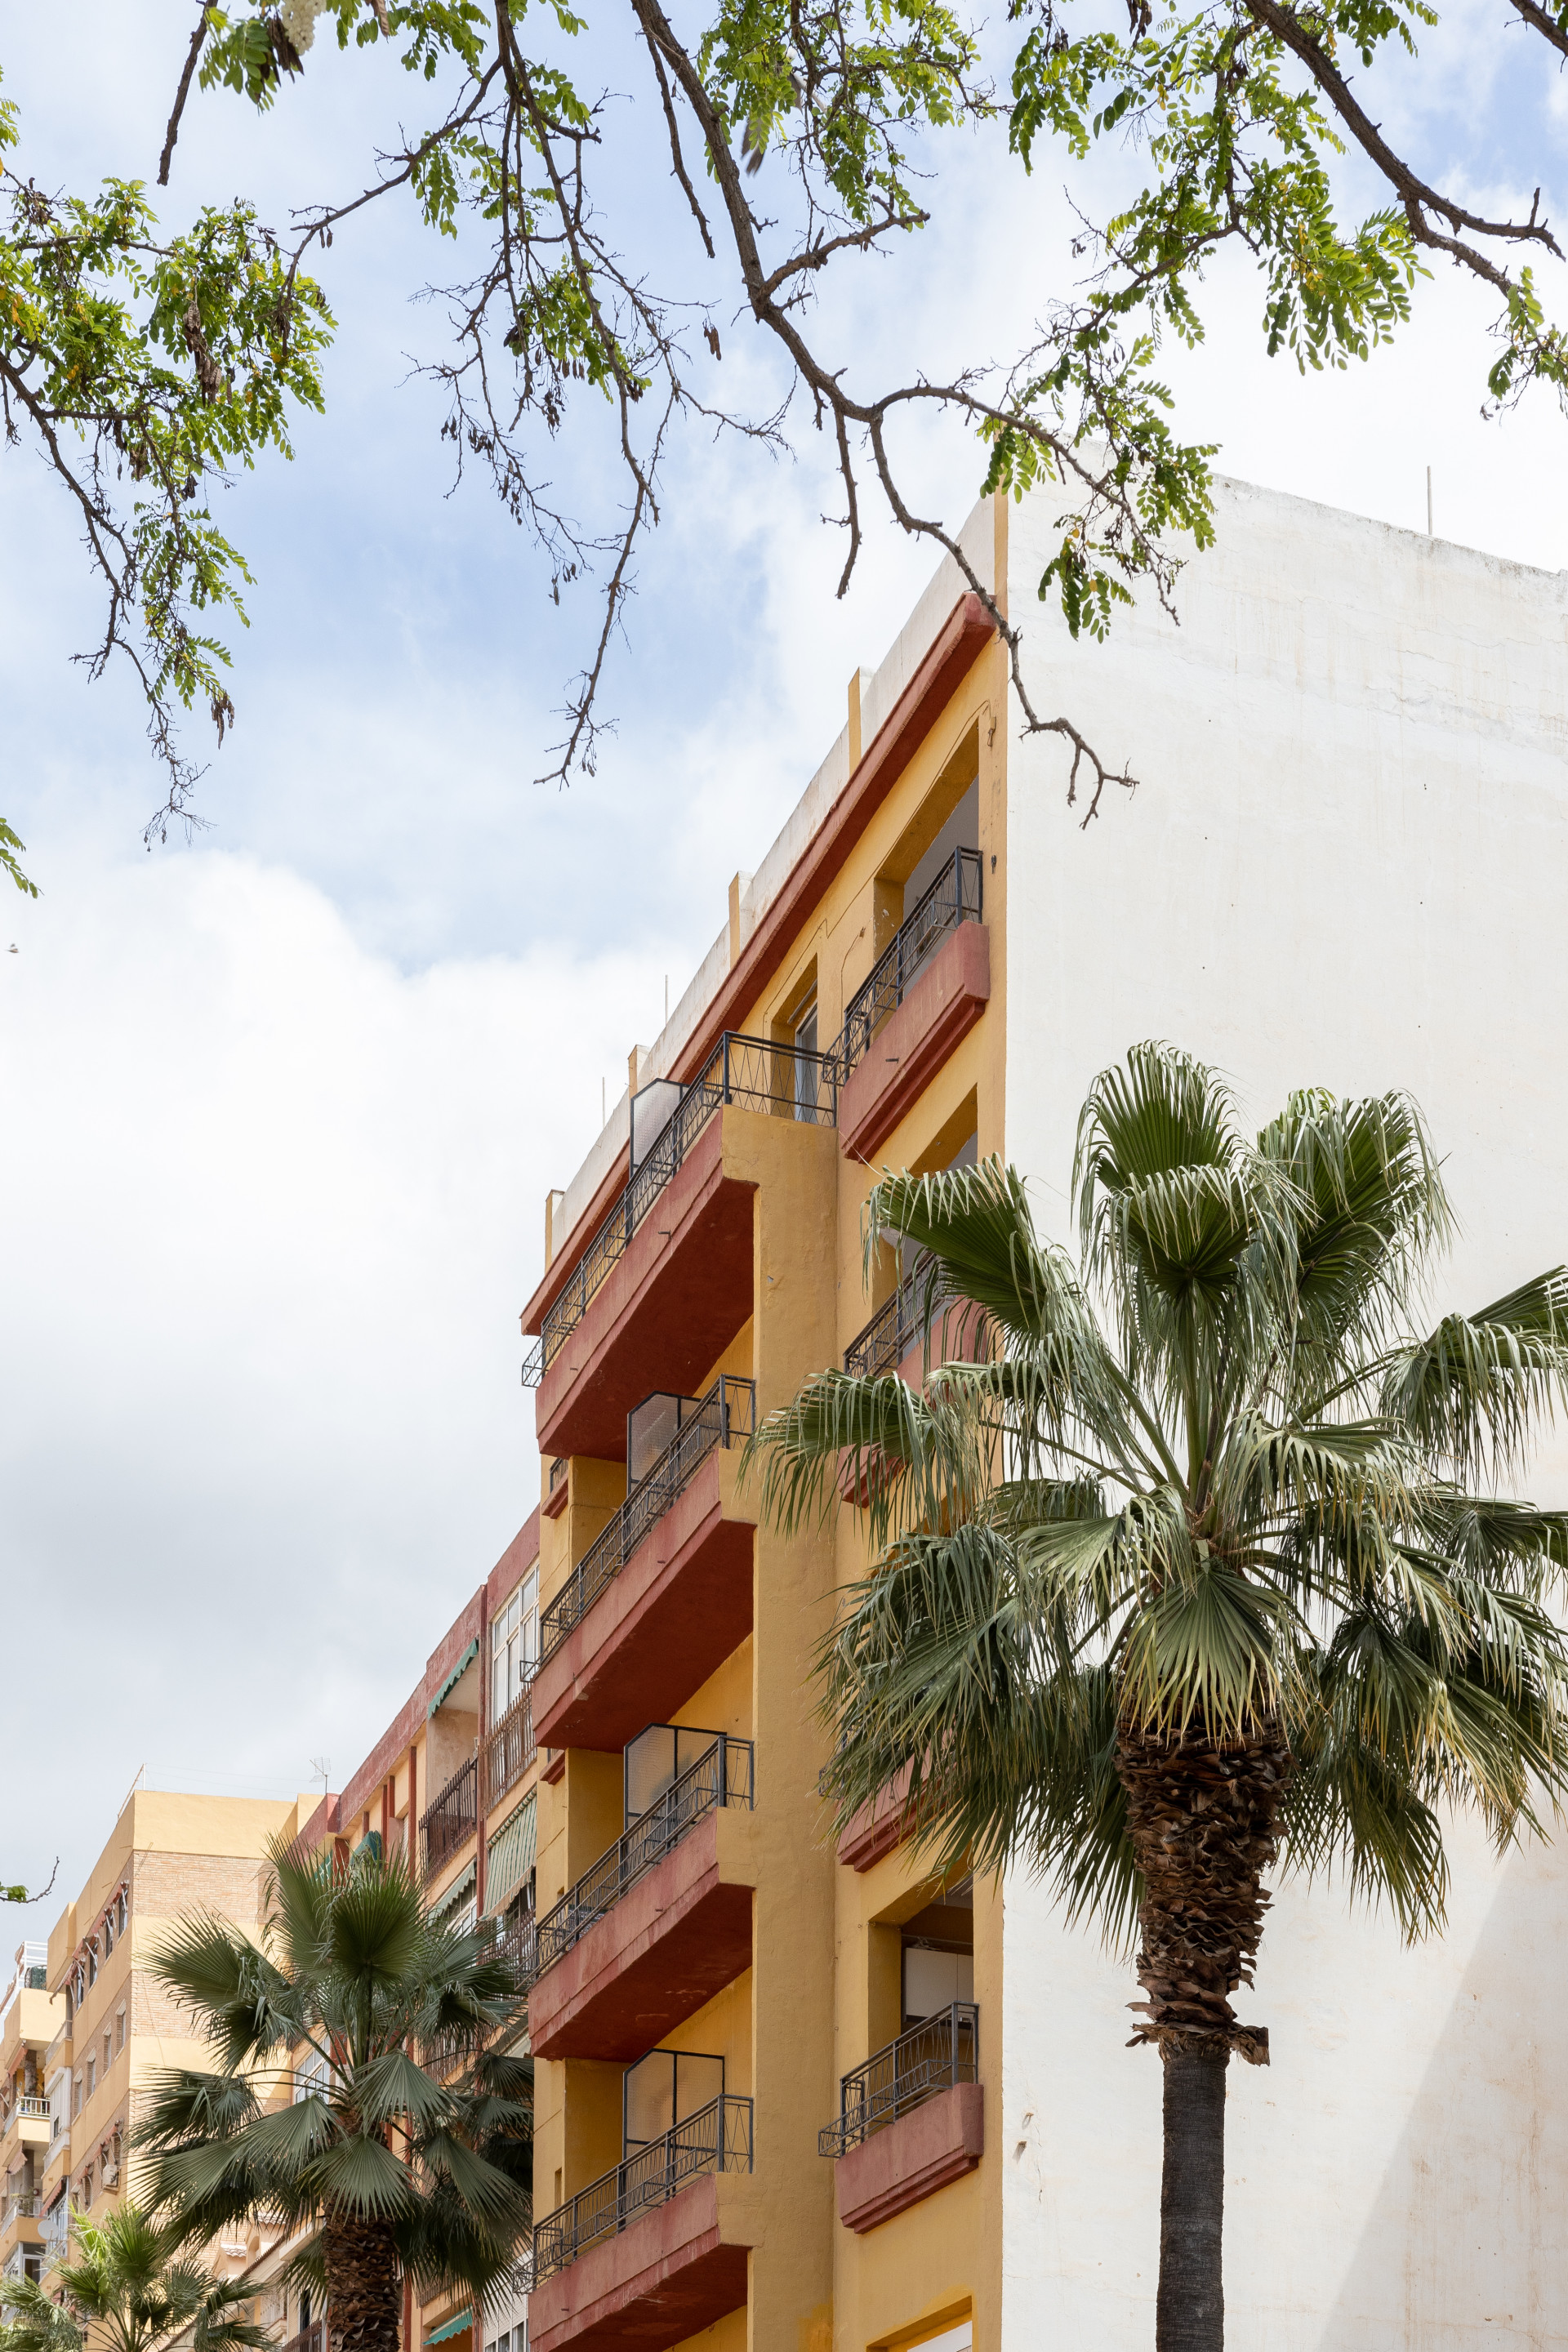 Unique Building in Malaga - Centro